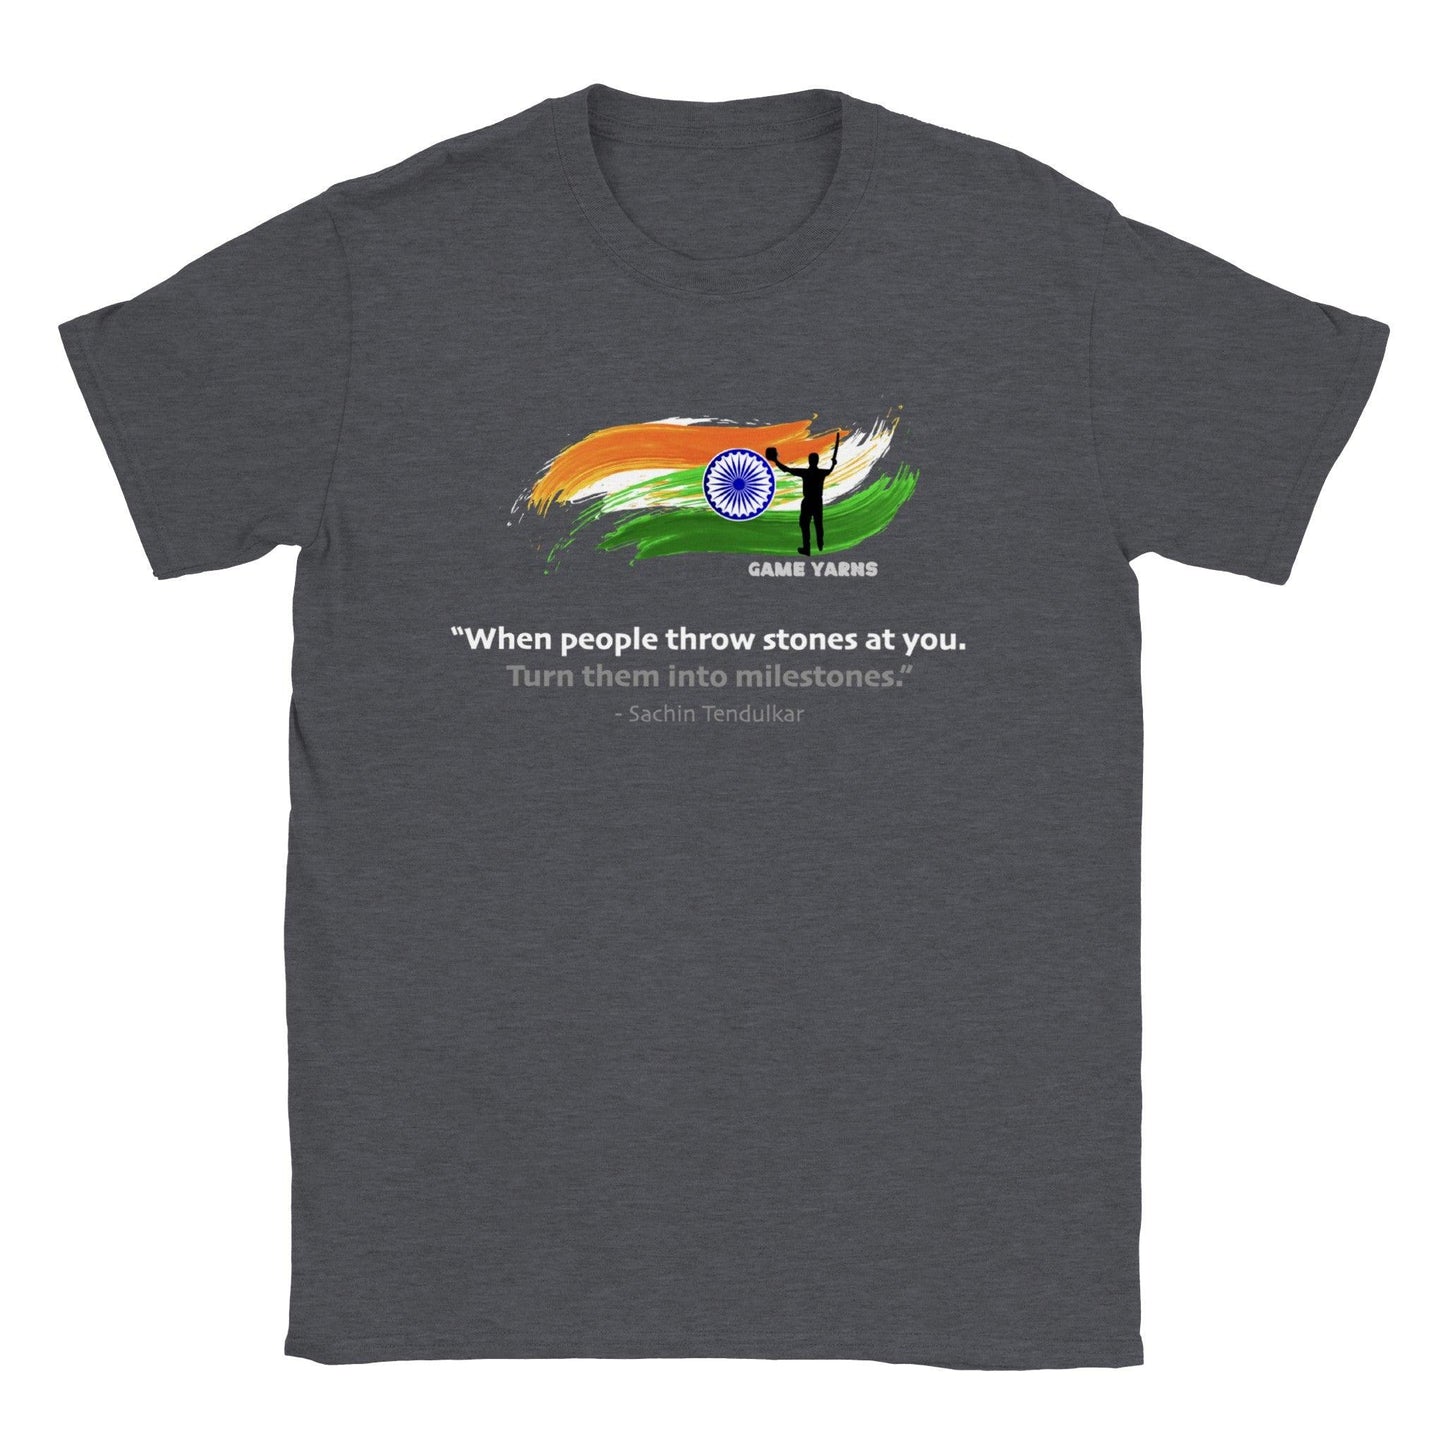 Sachin Tendulkar Cricket Motivation T-shirt by Game Yarns 